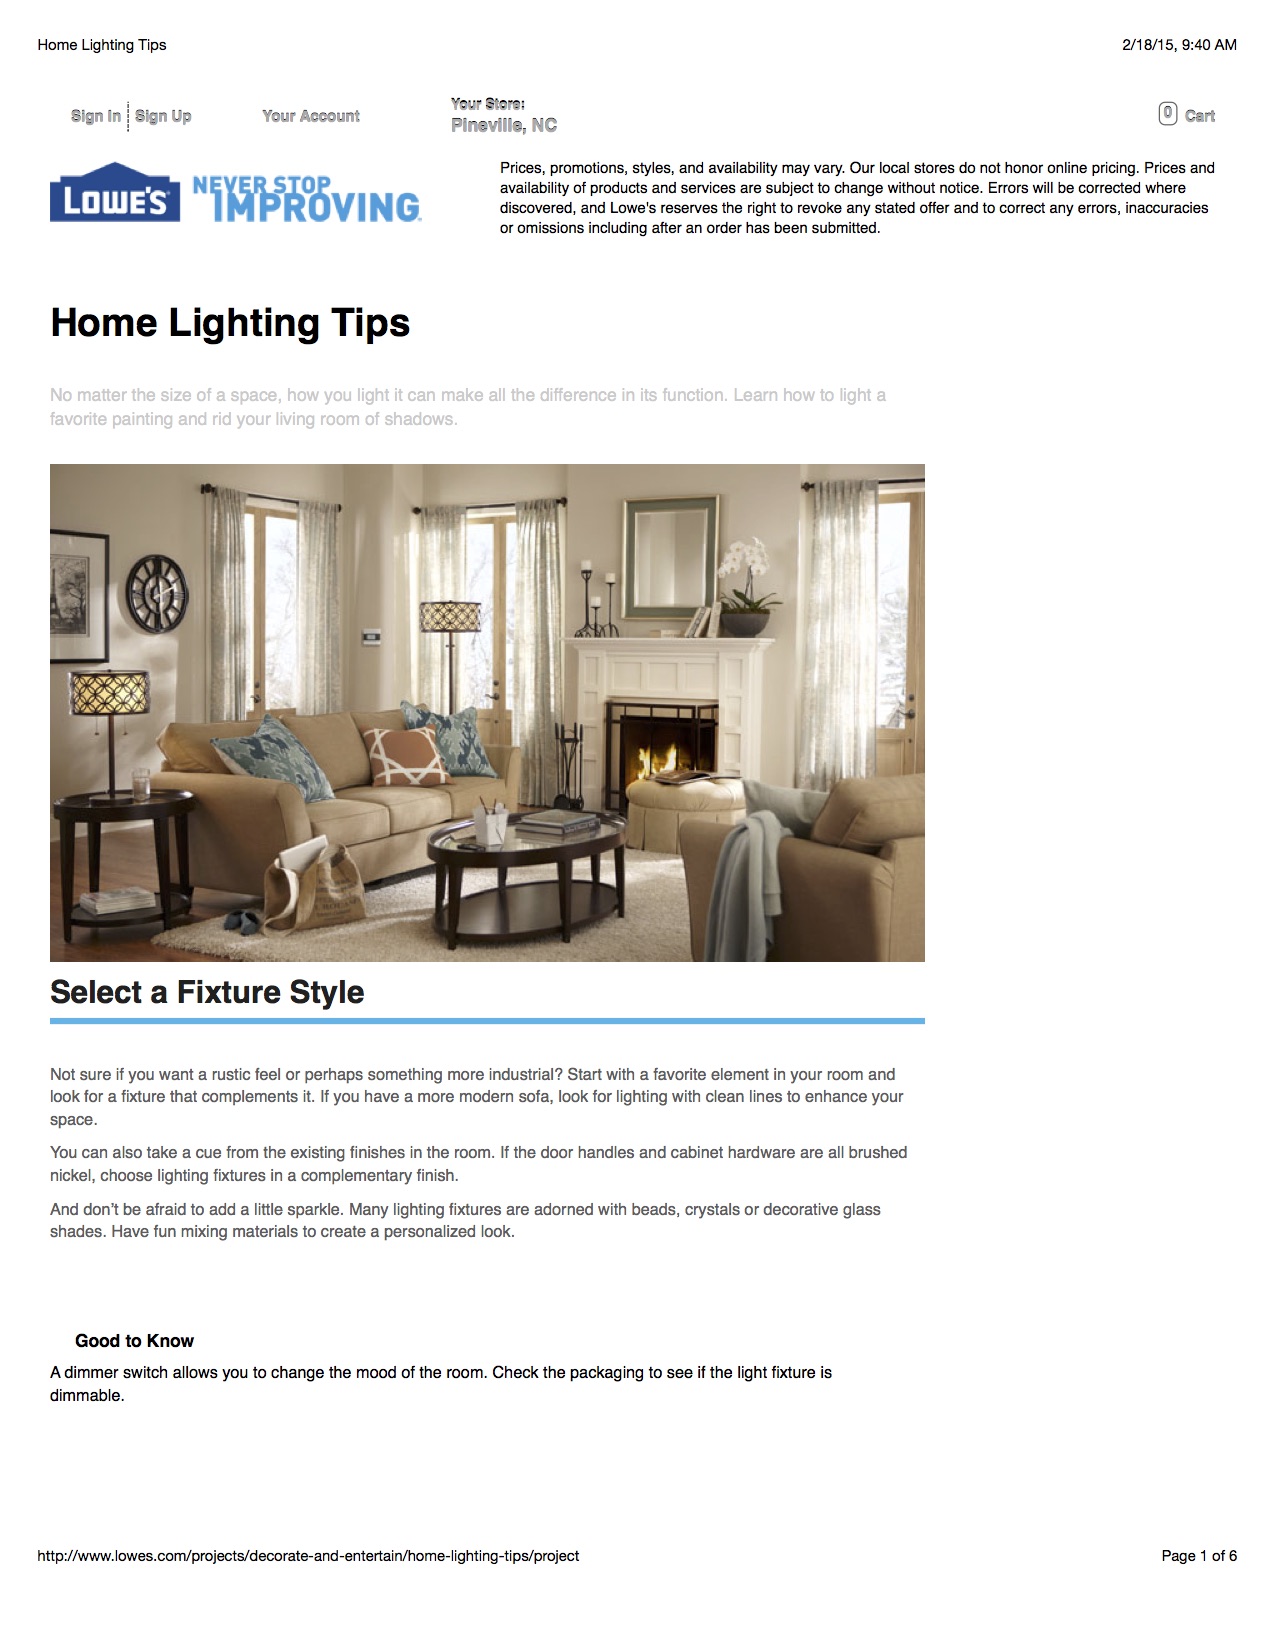 Home Lighting Tips_1.jpg